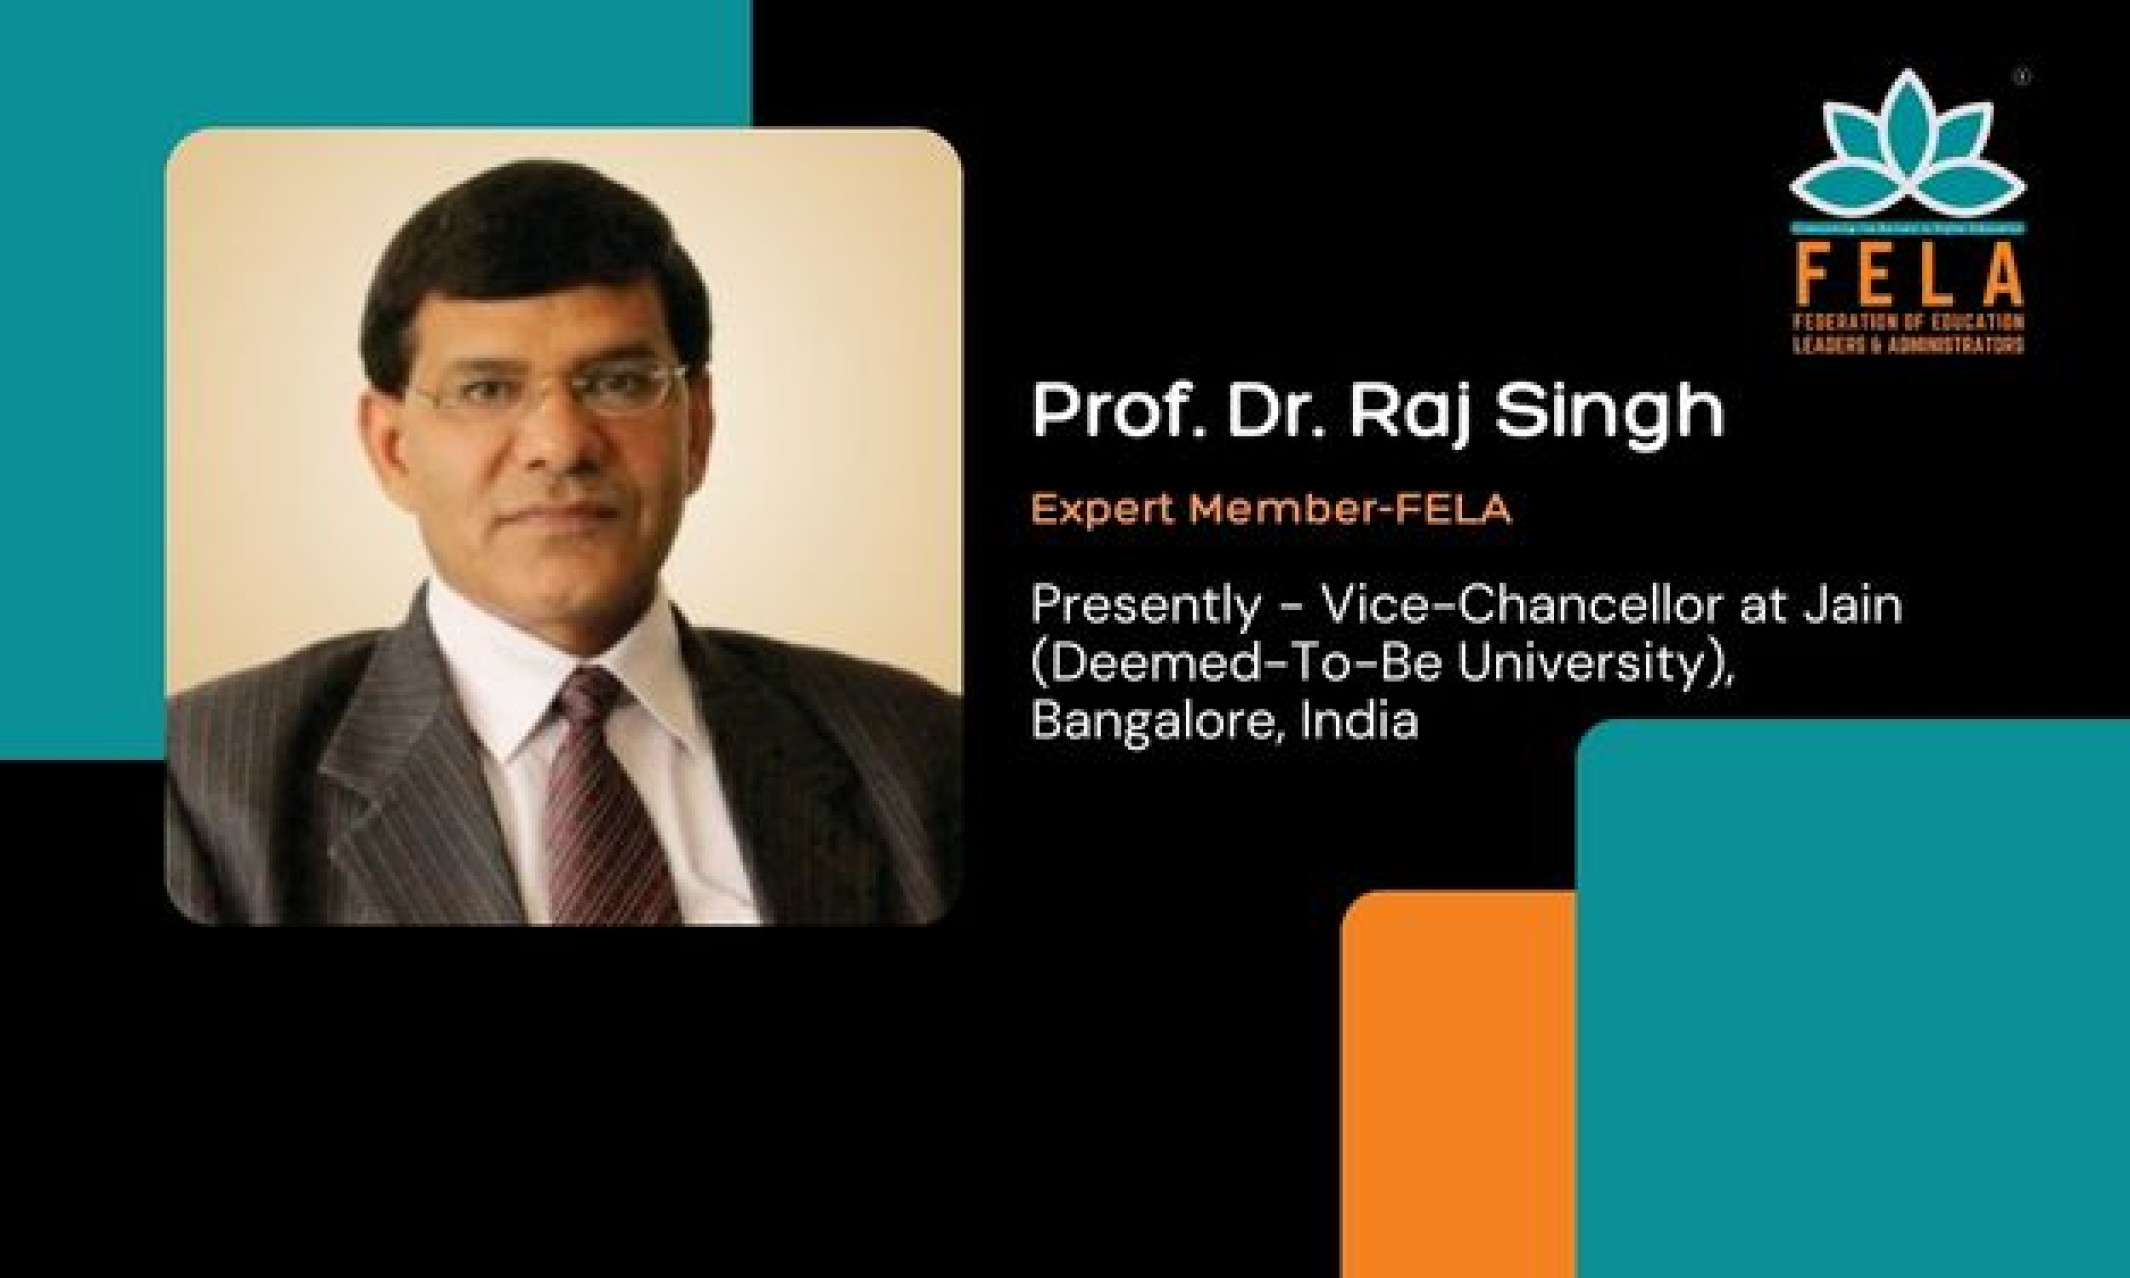 Prof. Dr. Raj Singh